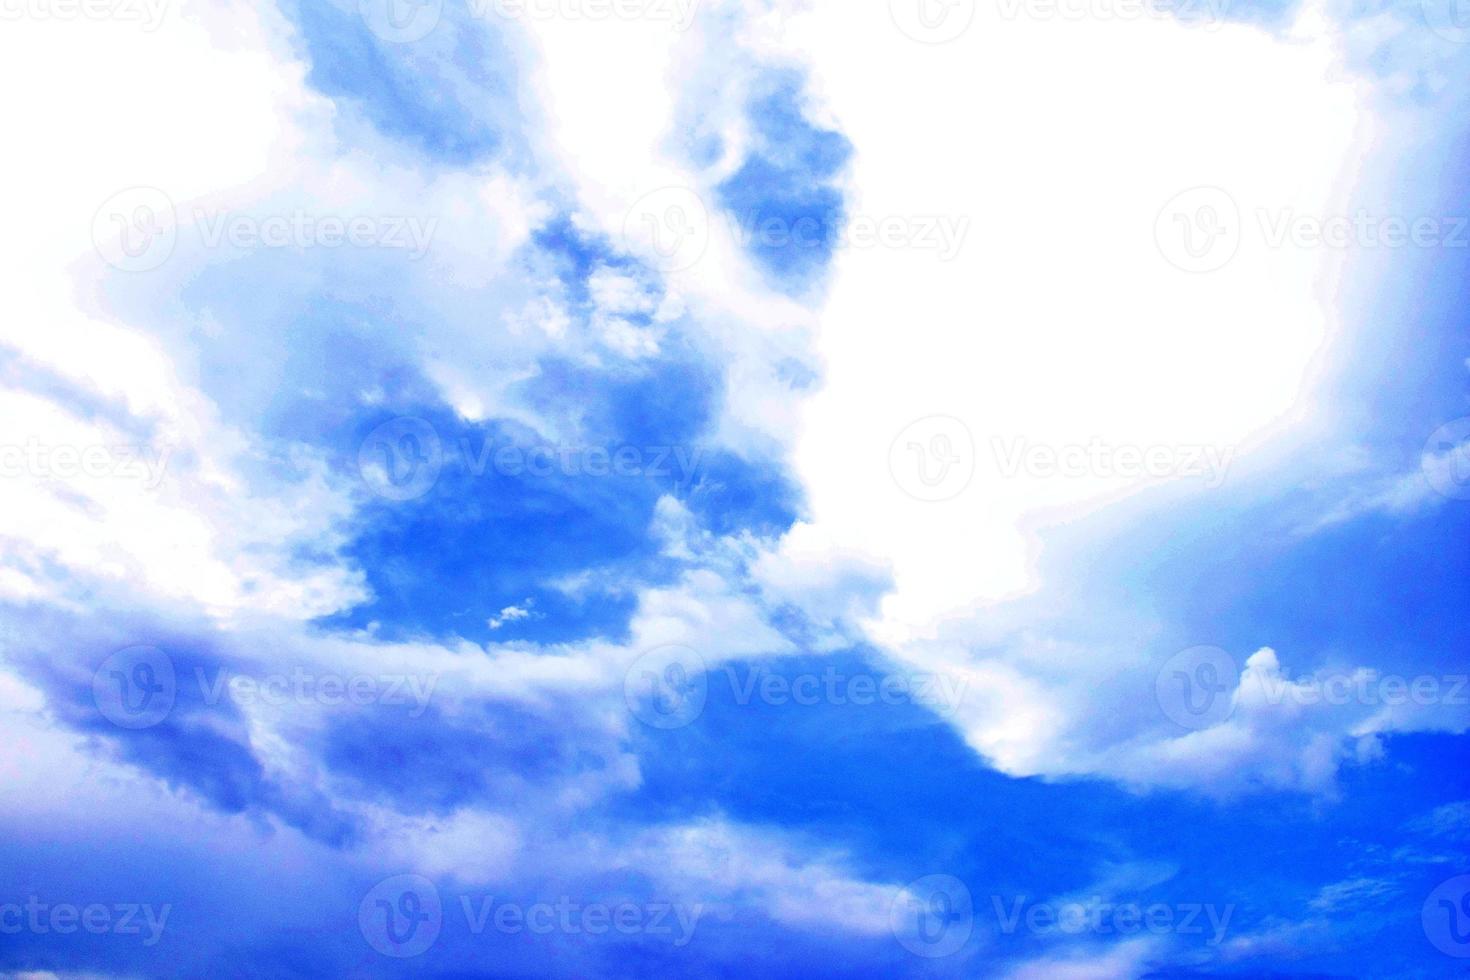 fond de ciel bleu et nuages blancs flou artistique. nuages de ciel bleu pour le fond. fond naturel. photo